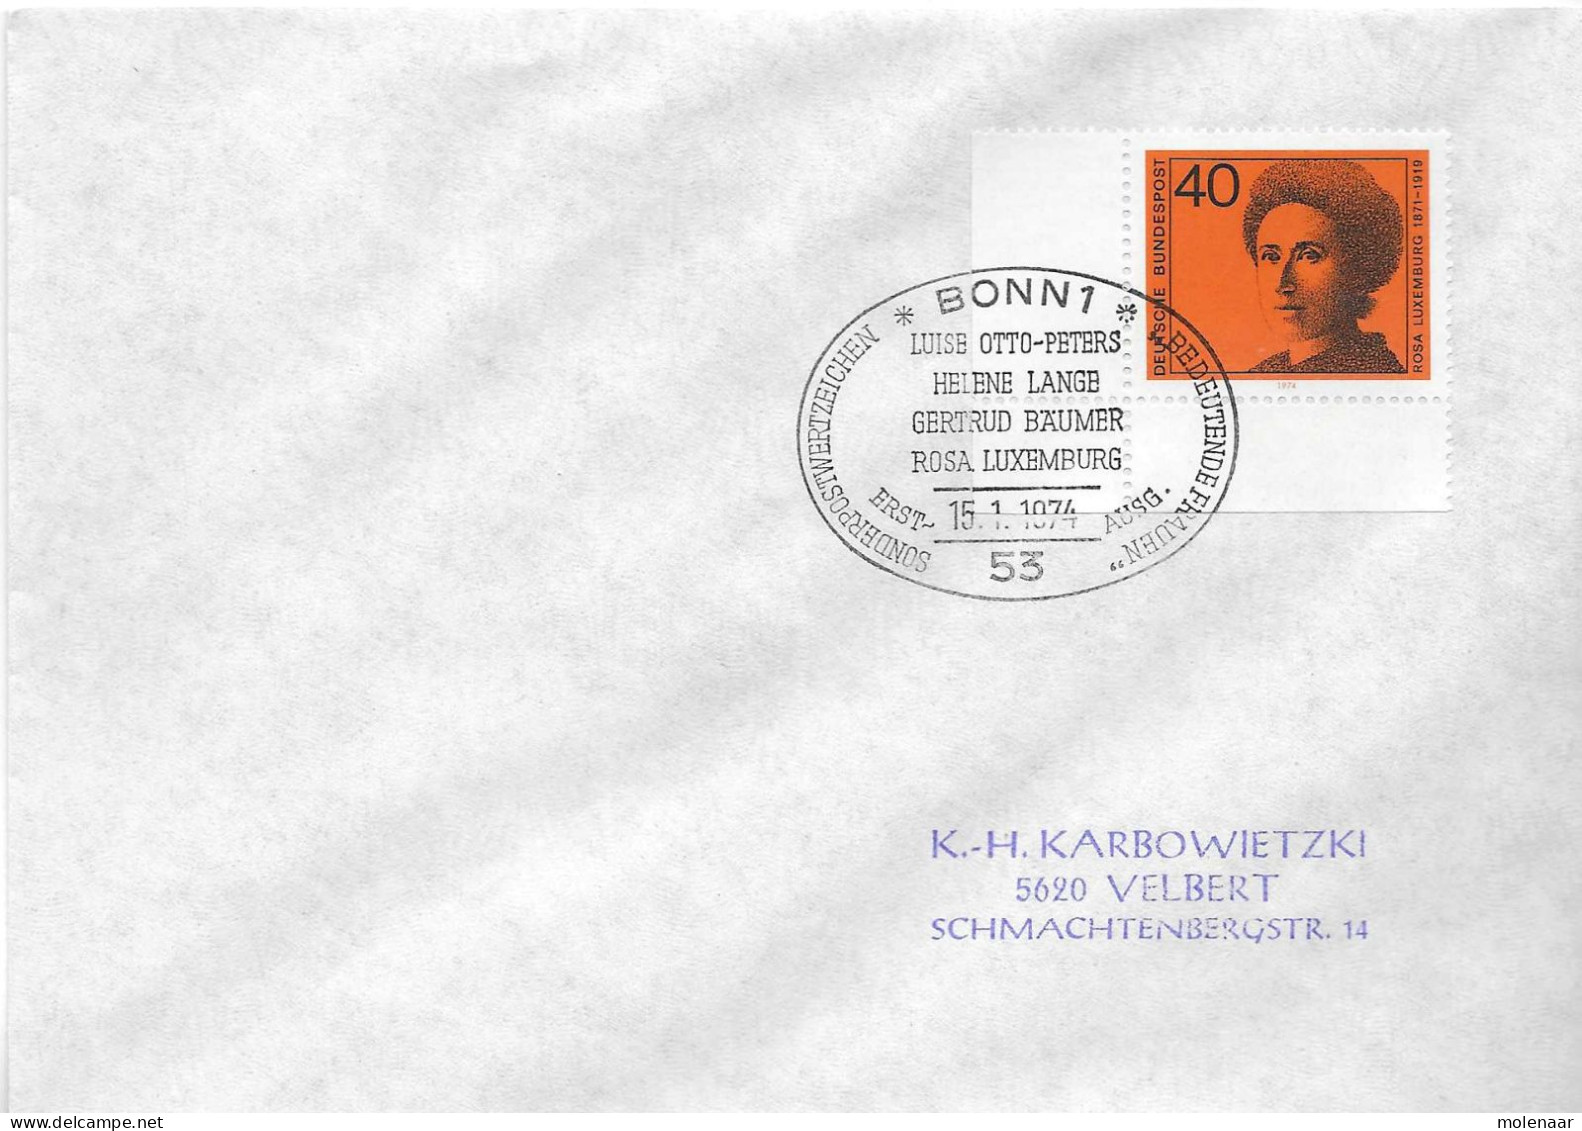 Postzegels > Europa > Duitsland > West-Duitsland > 1970-1979 > Brief Met No. 794 (17381) - Lettres & Documents